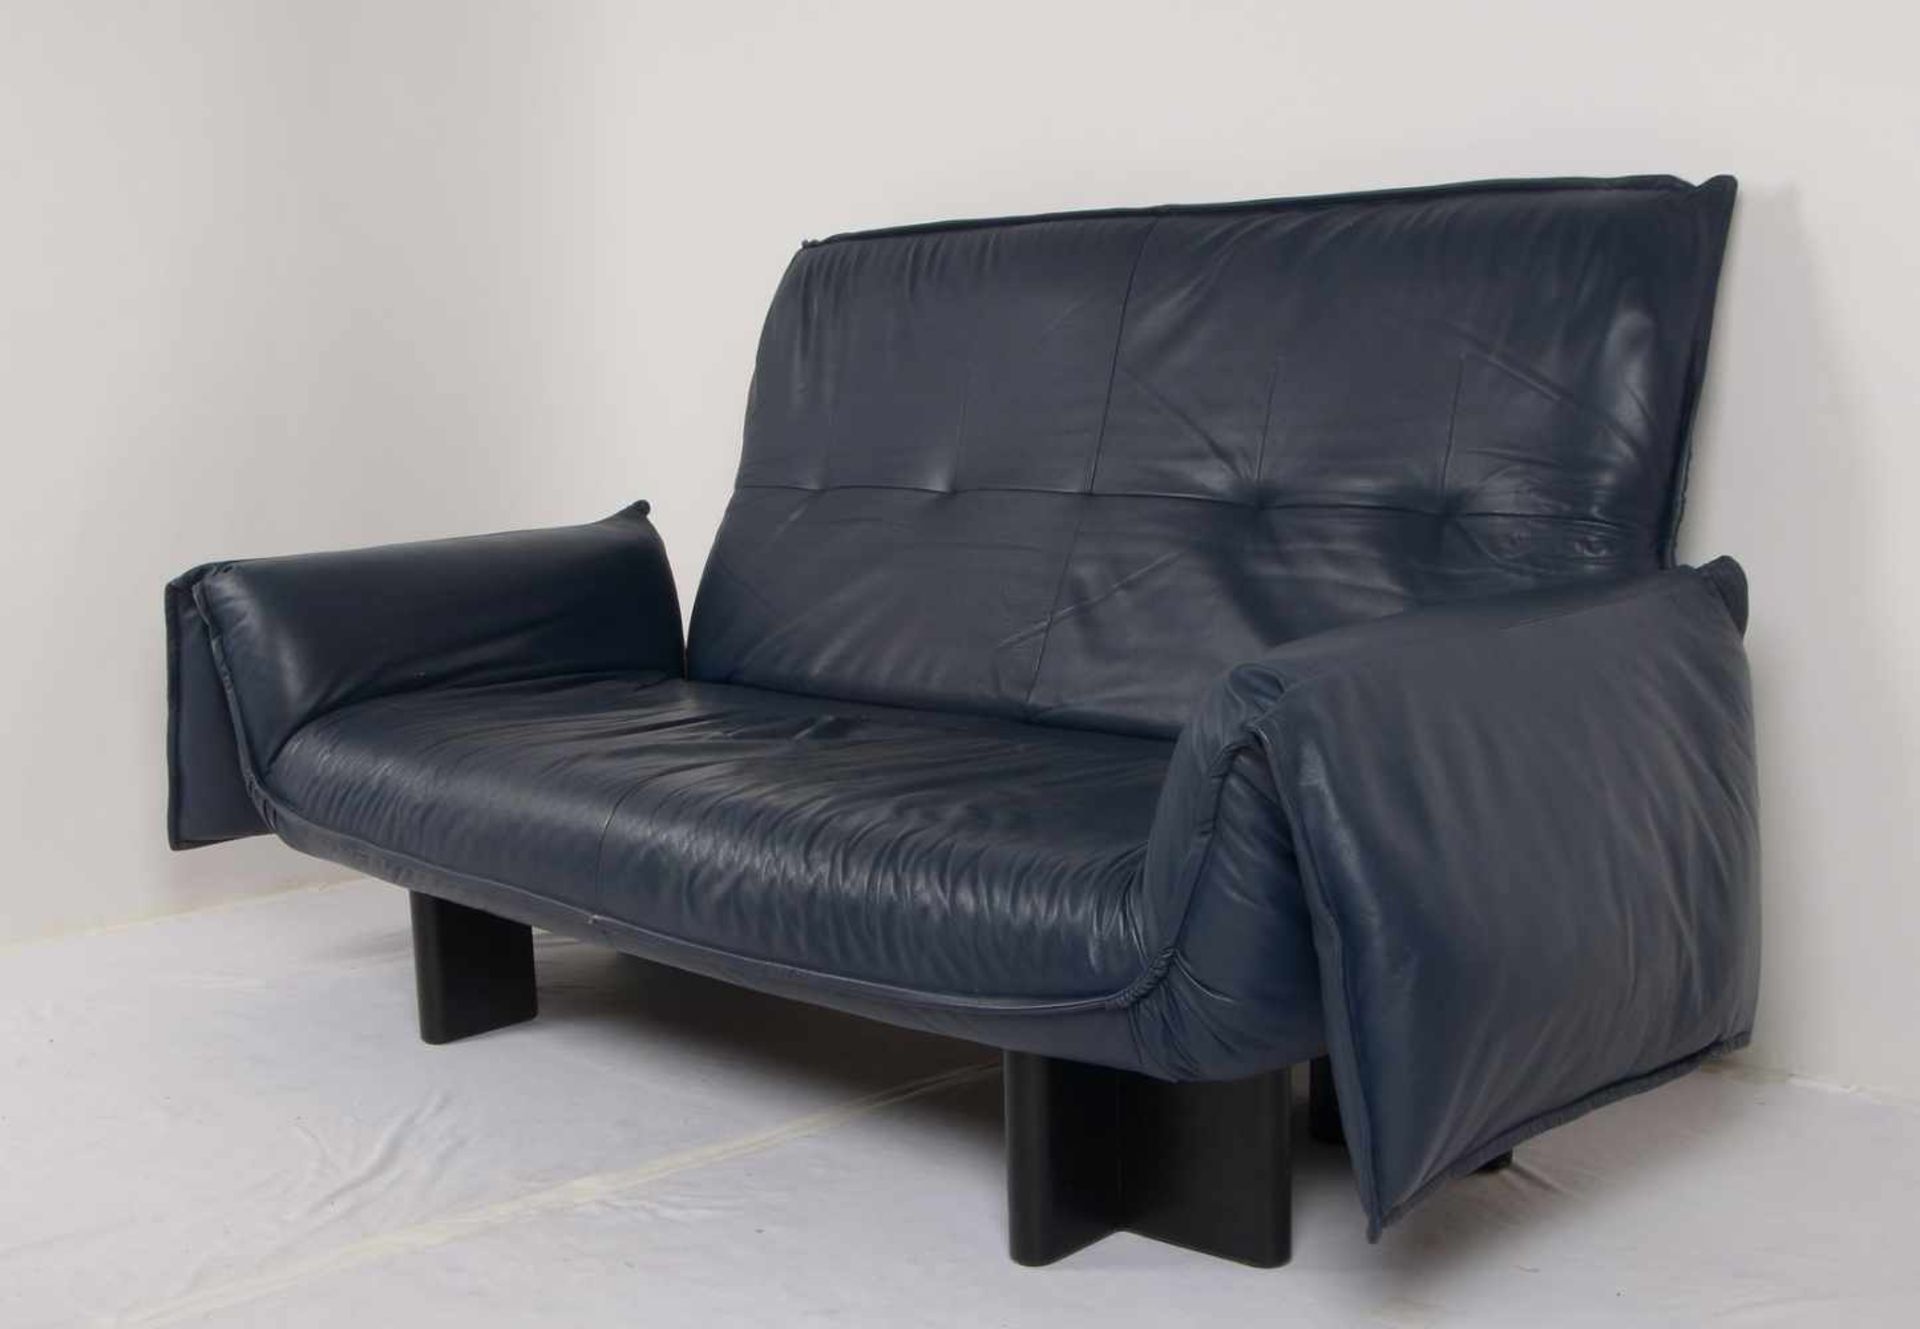 Birdie, Designer-Sofa/Zweisitzer, nachtblaues Echtleder, Sitz mit Federung, Rückenlehne hochklappbar - Bild 3 aus 3